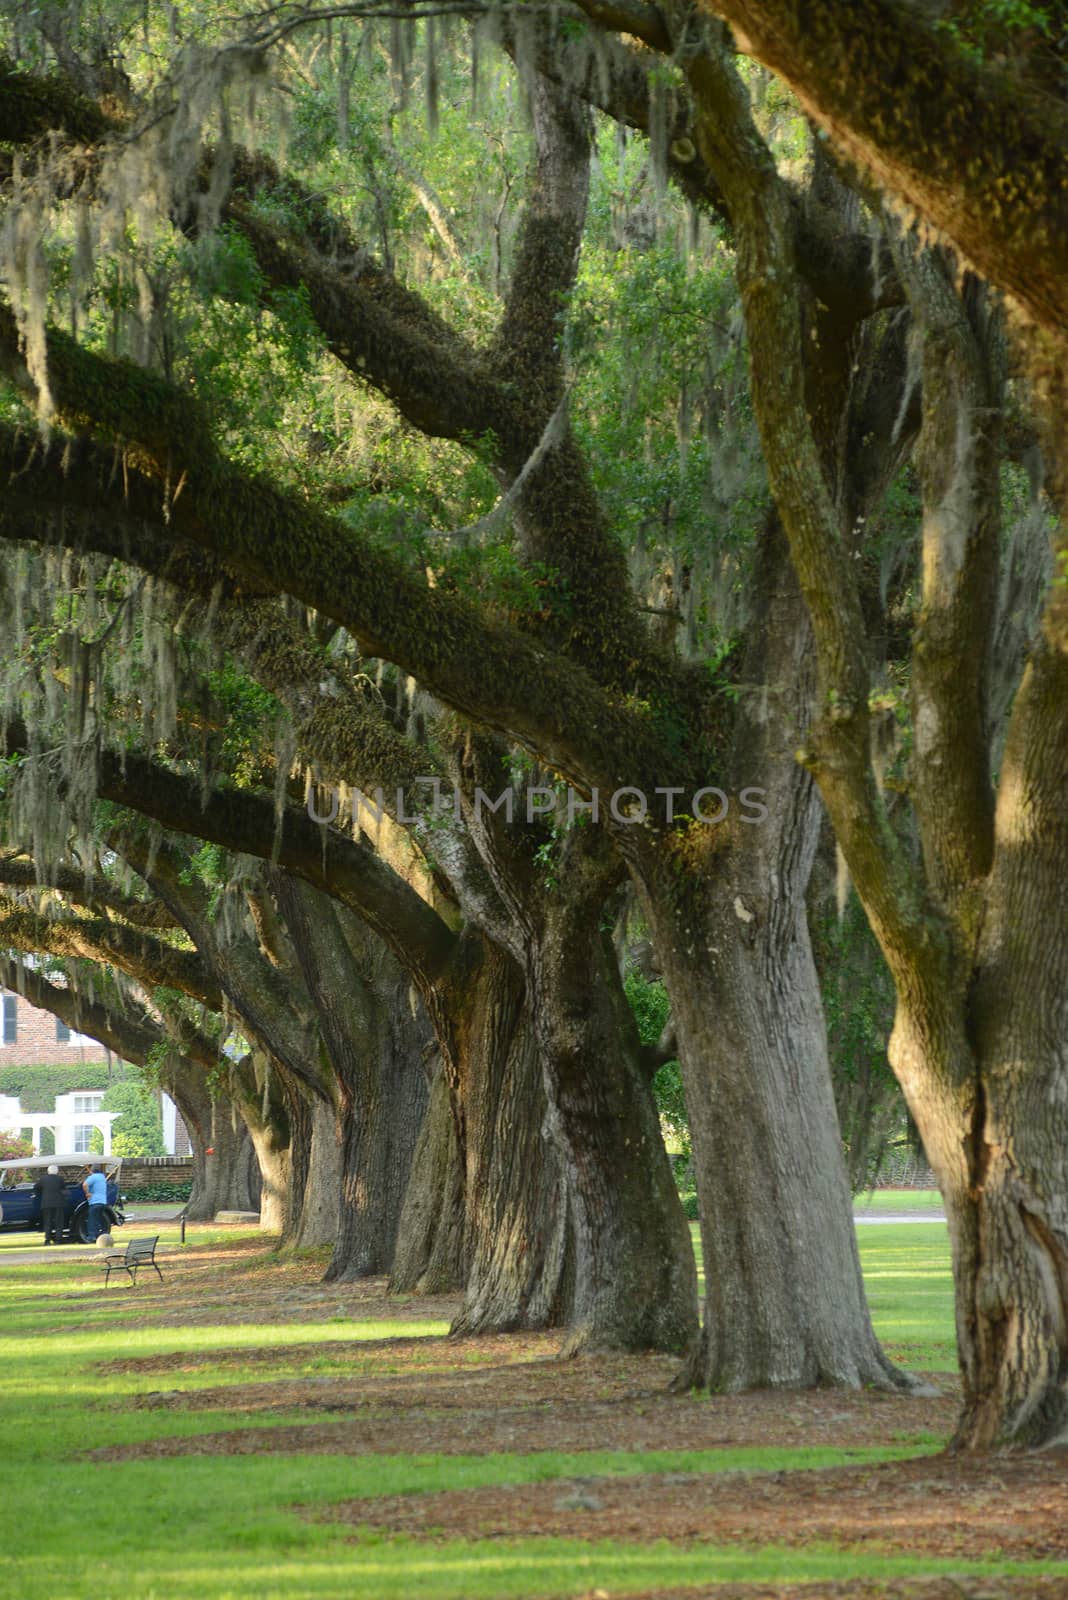 a row of old oak tree from a plantation near Charleston, south carolina